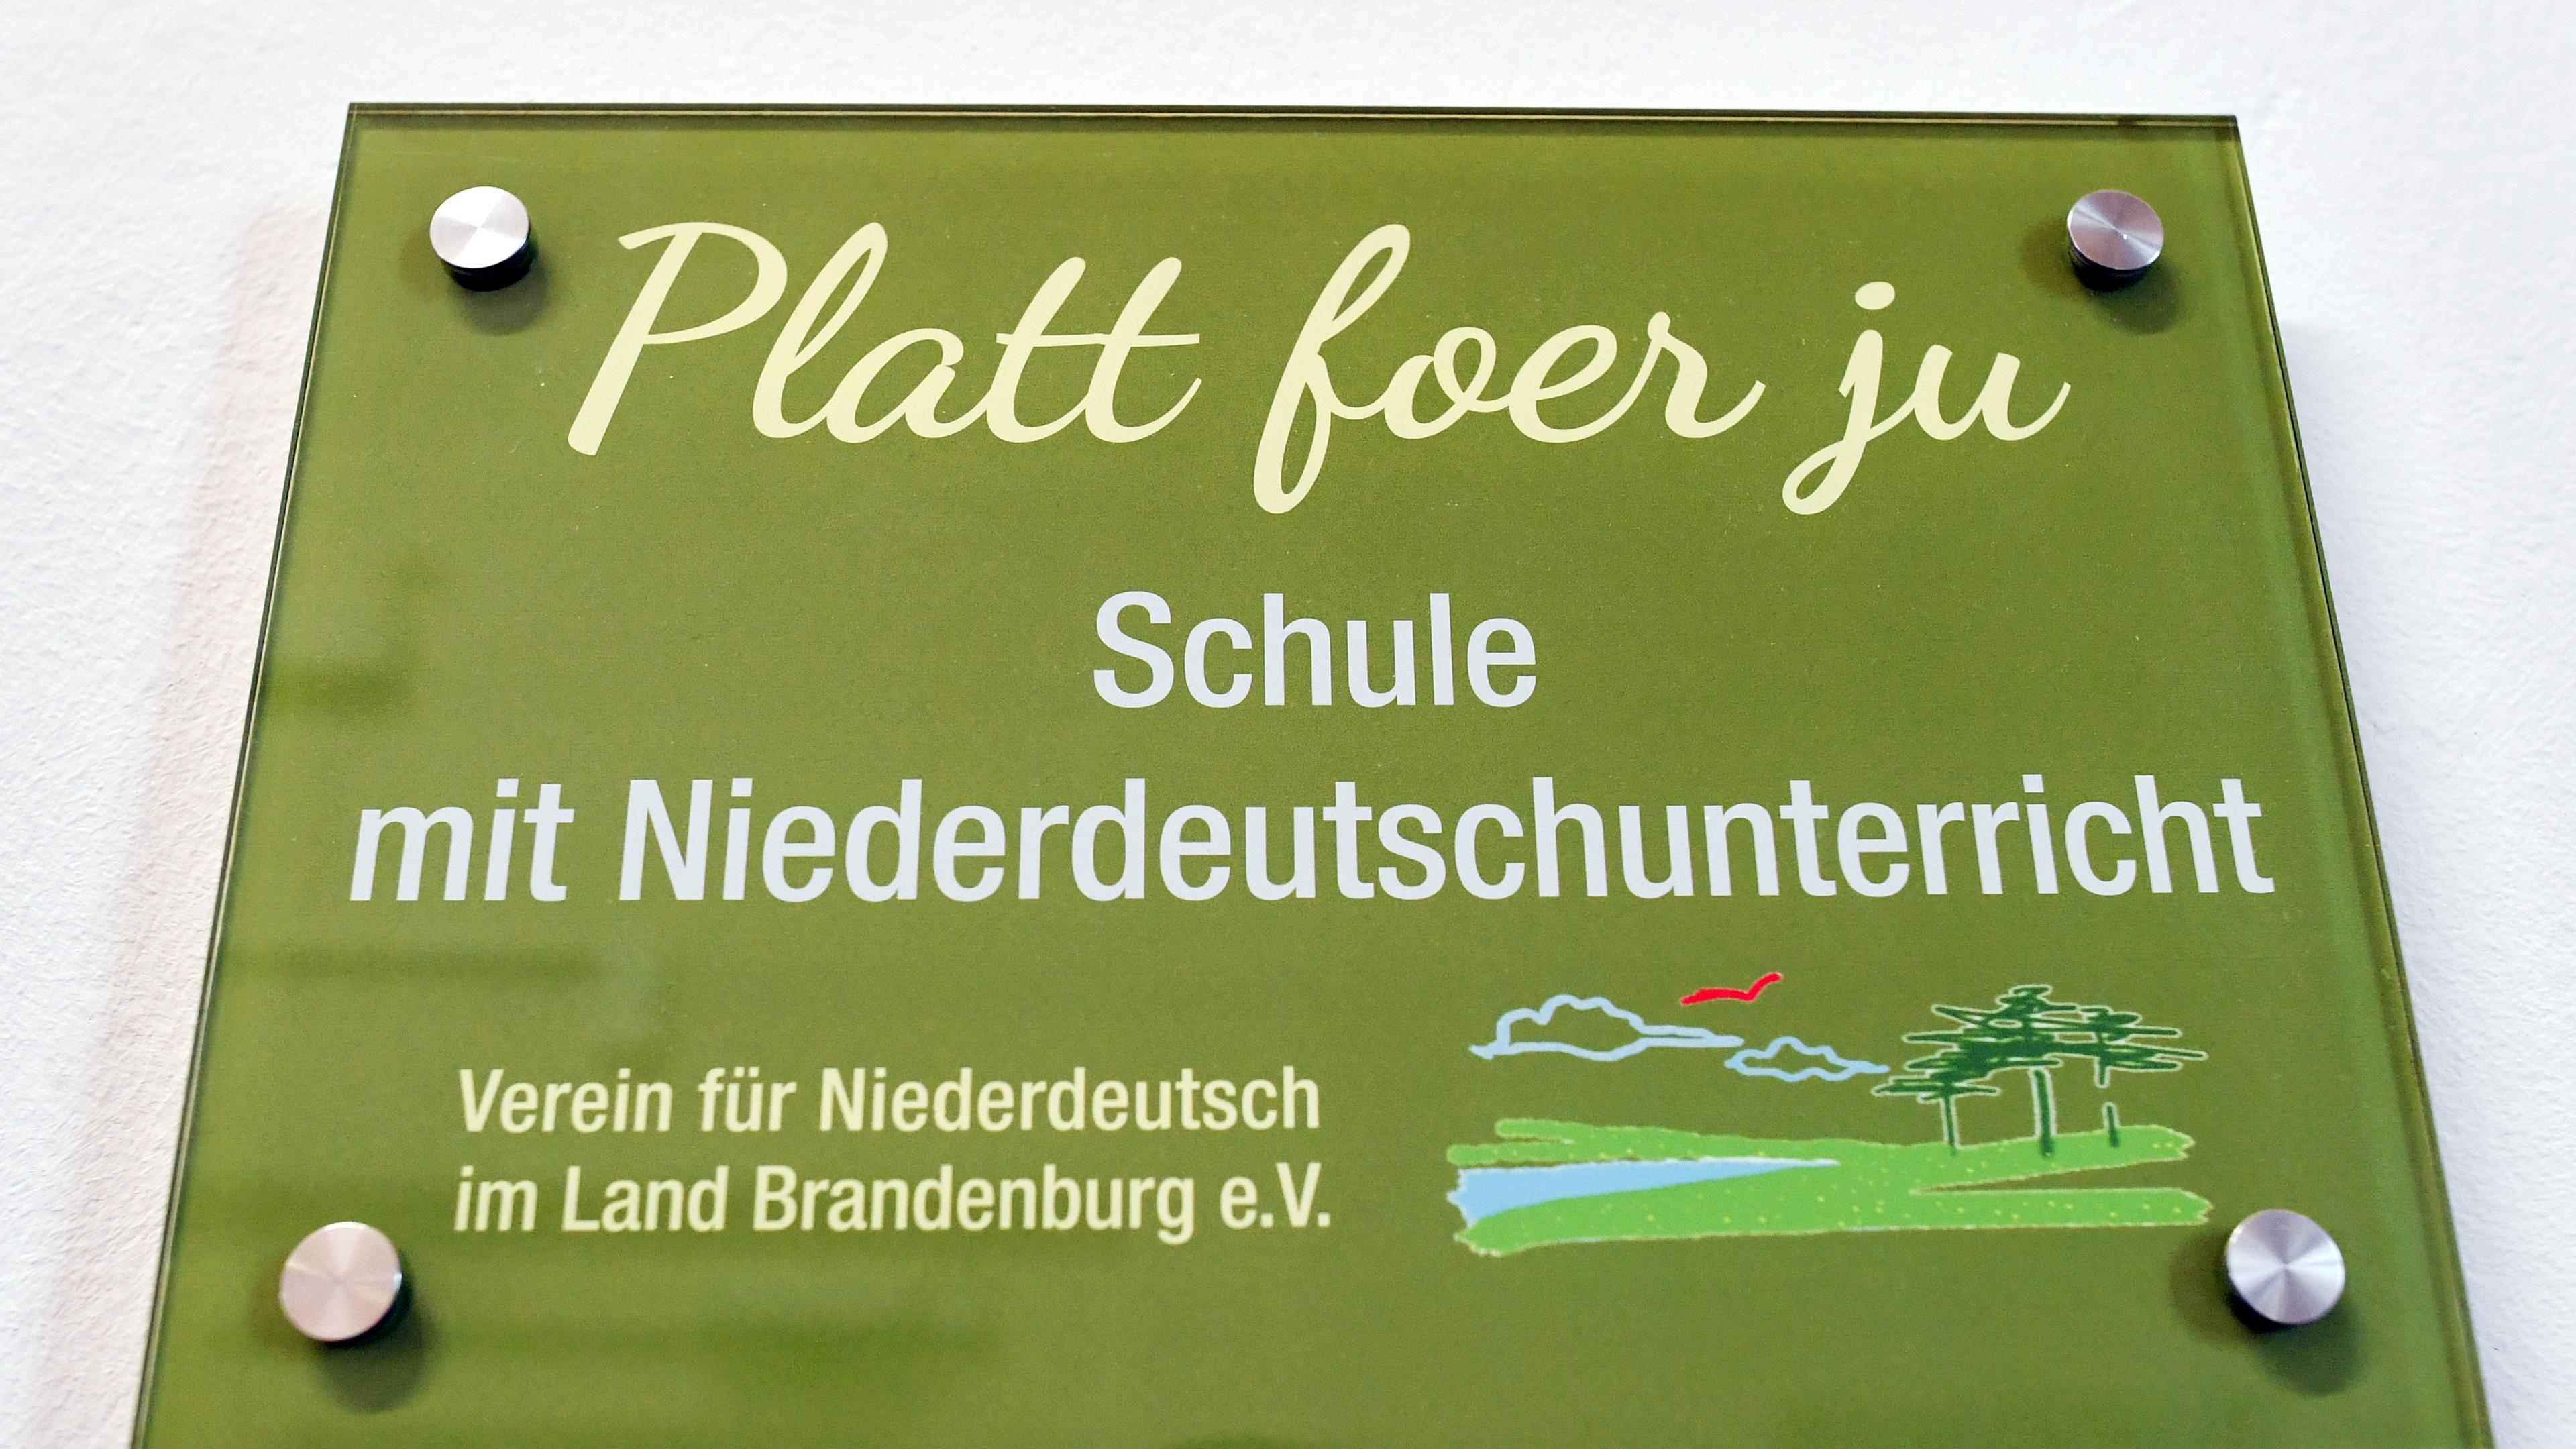 Ein Schild mit der Aufschrift "Platt foer ju - Schule mit Niederdeutschunterricht"